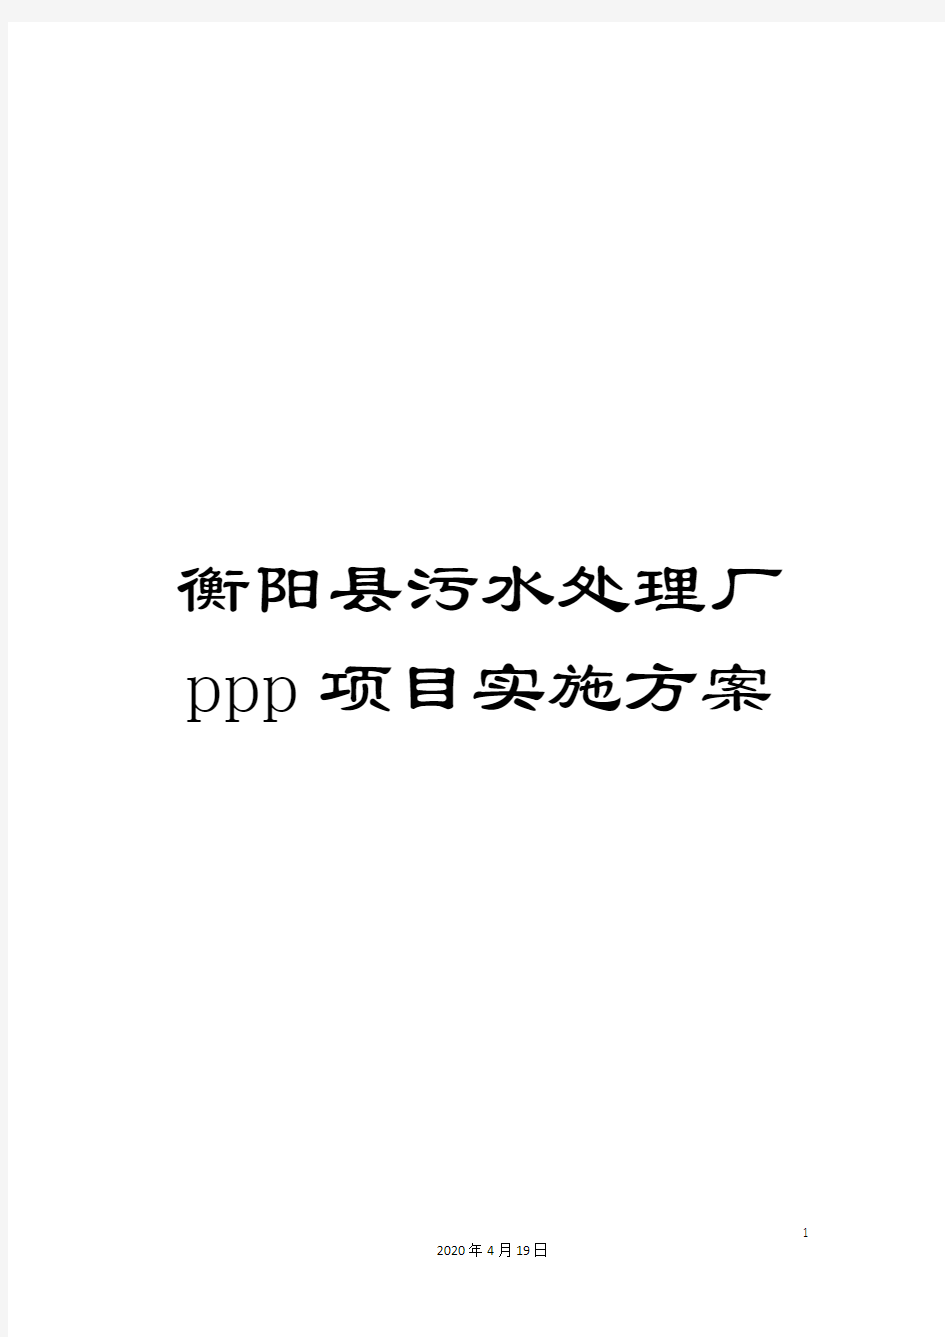 衡阳县污水处理厂ppp项目实施方案